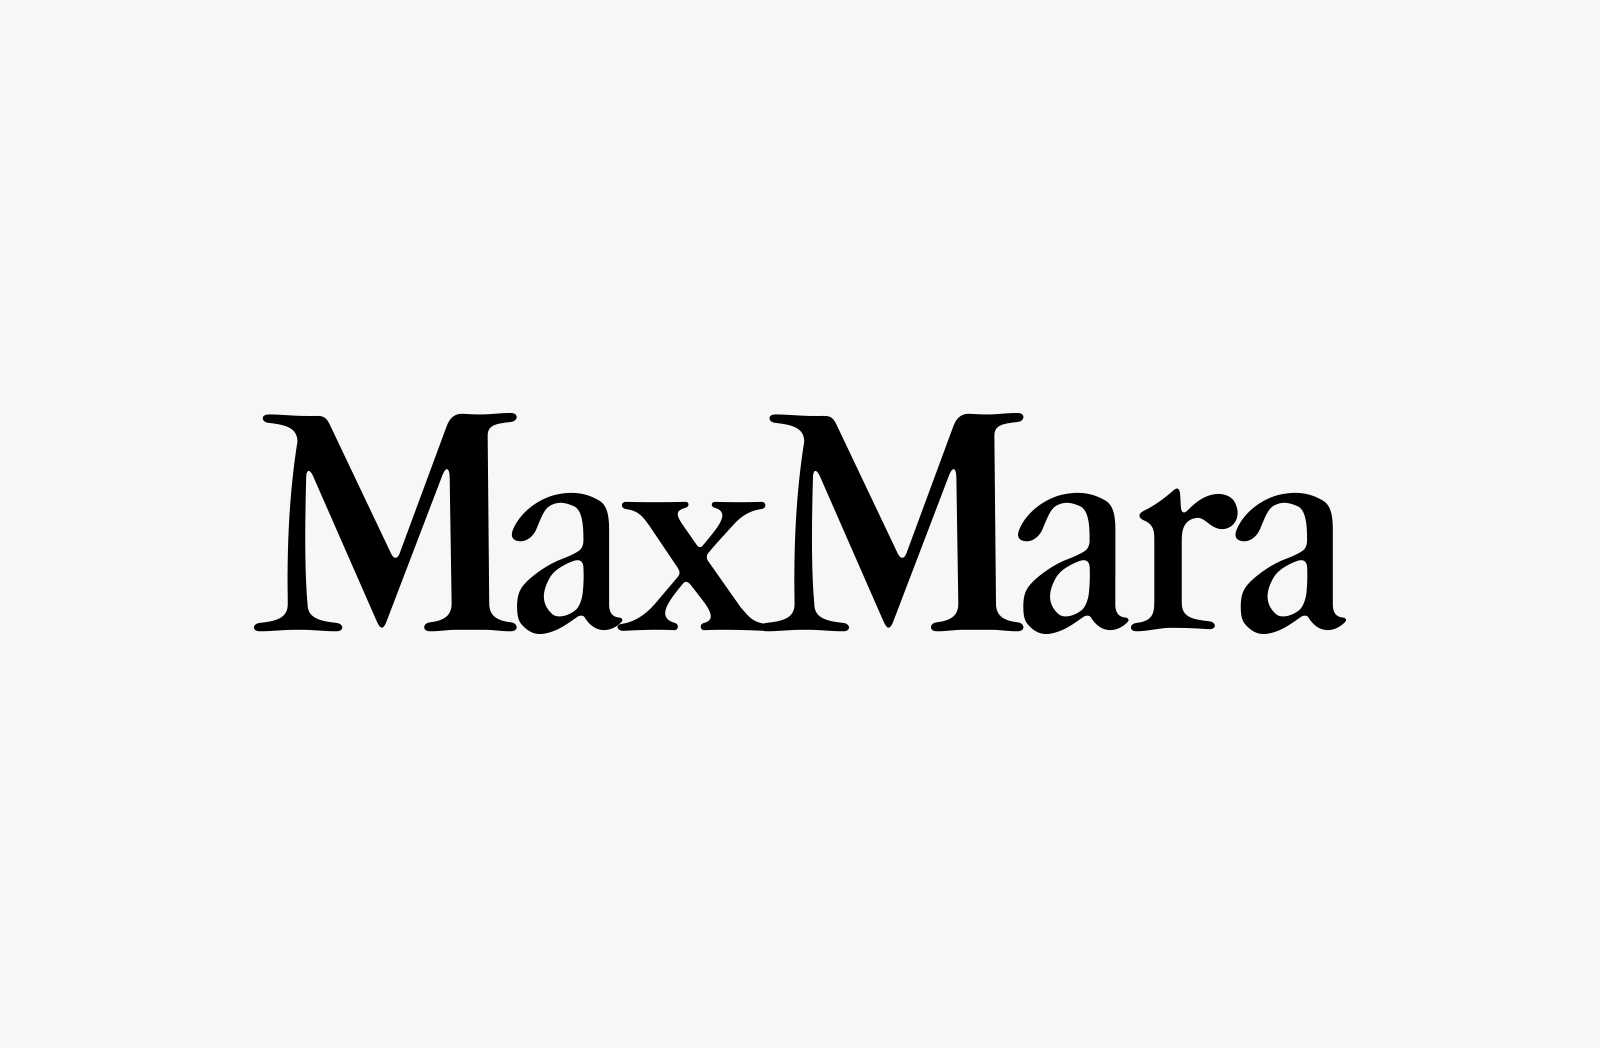 maxmara-logo